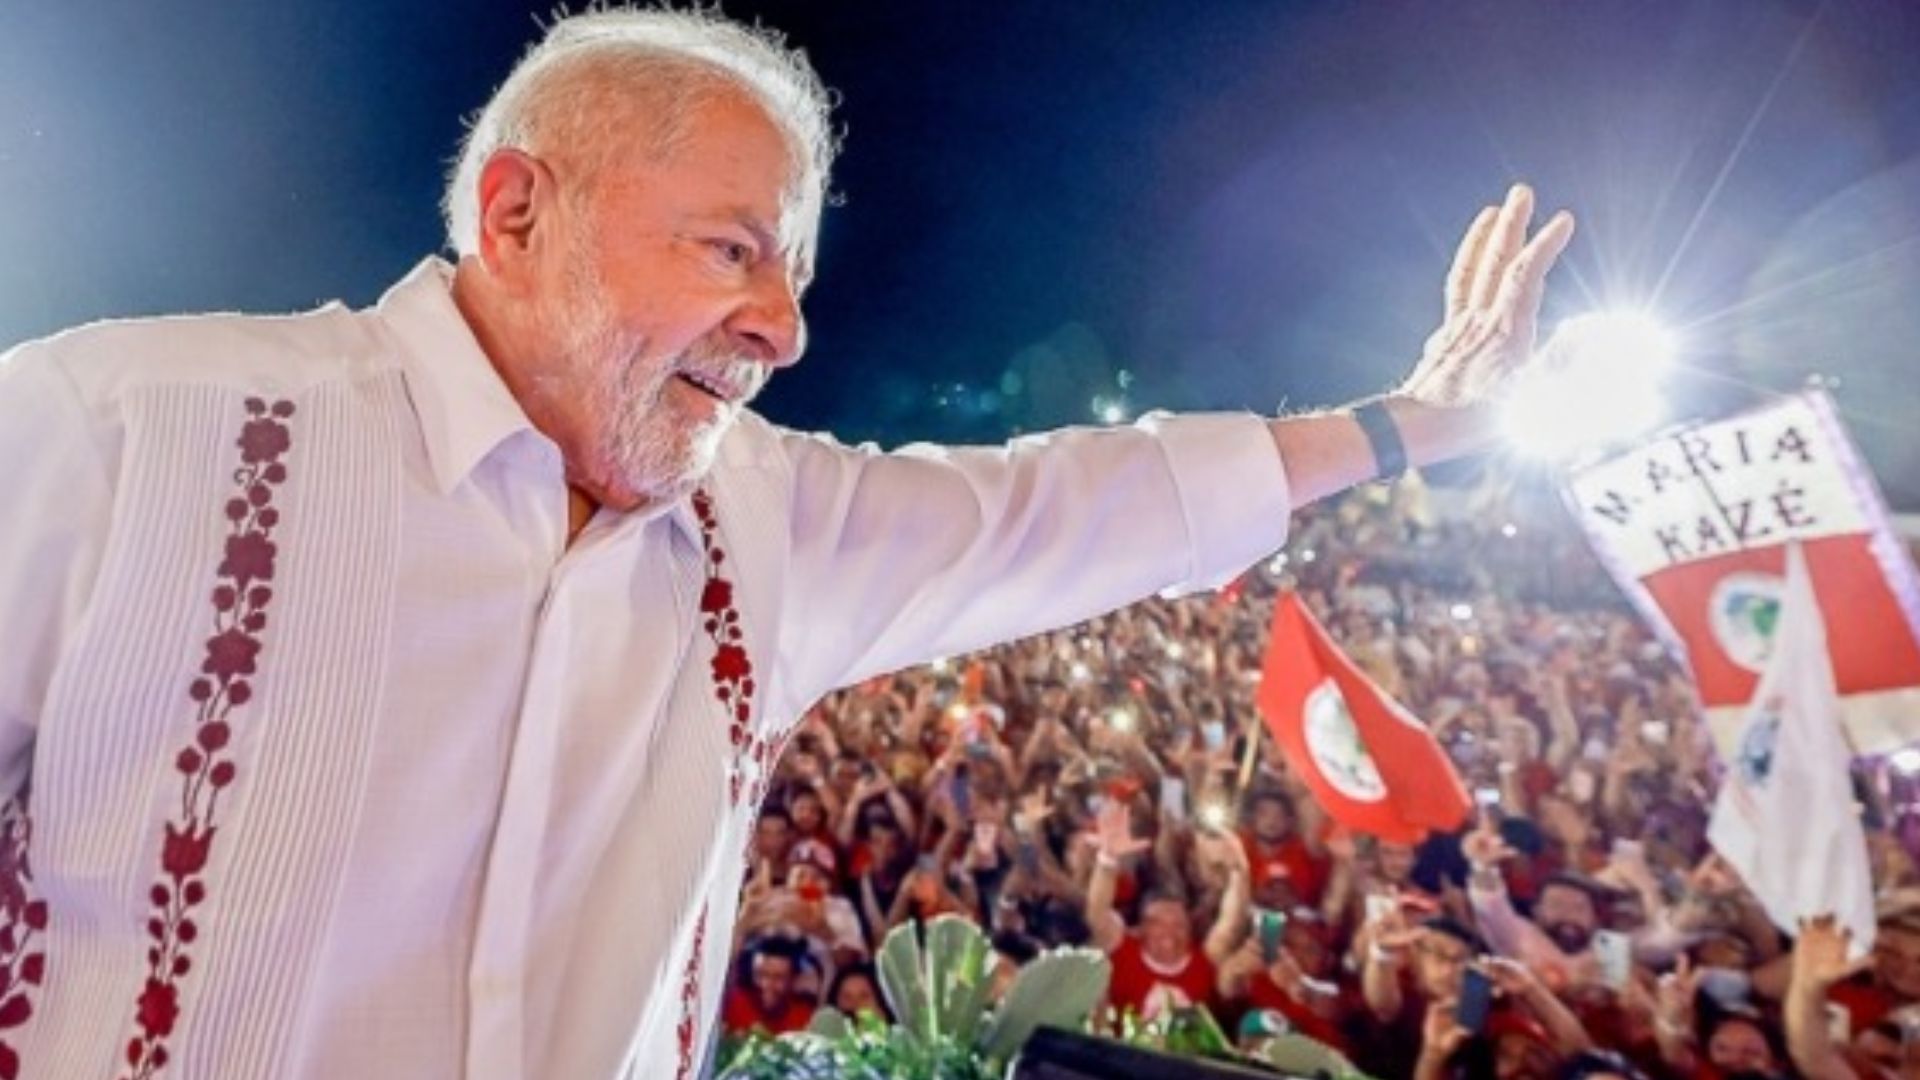 Instituto Potencial: Lula lidera com 50,1% das intenções de votos em Pernambuco